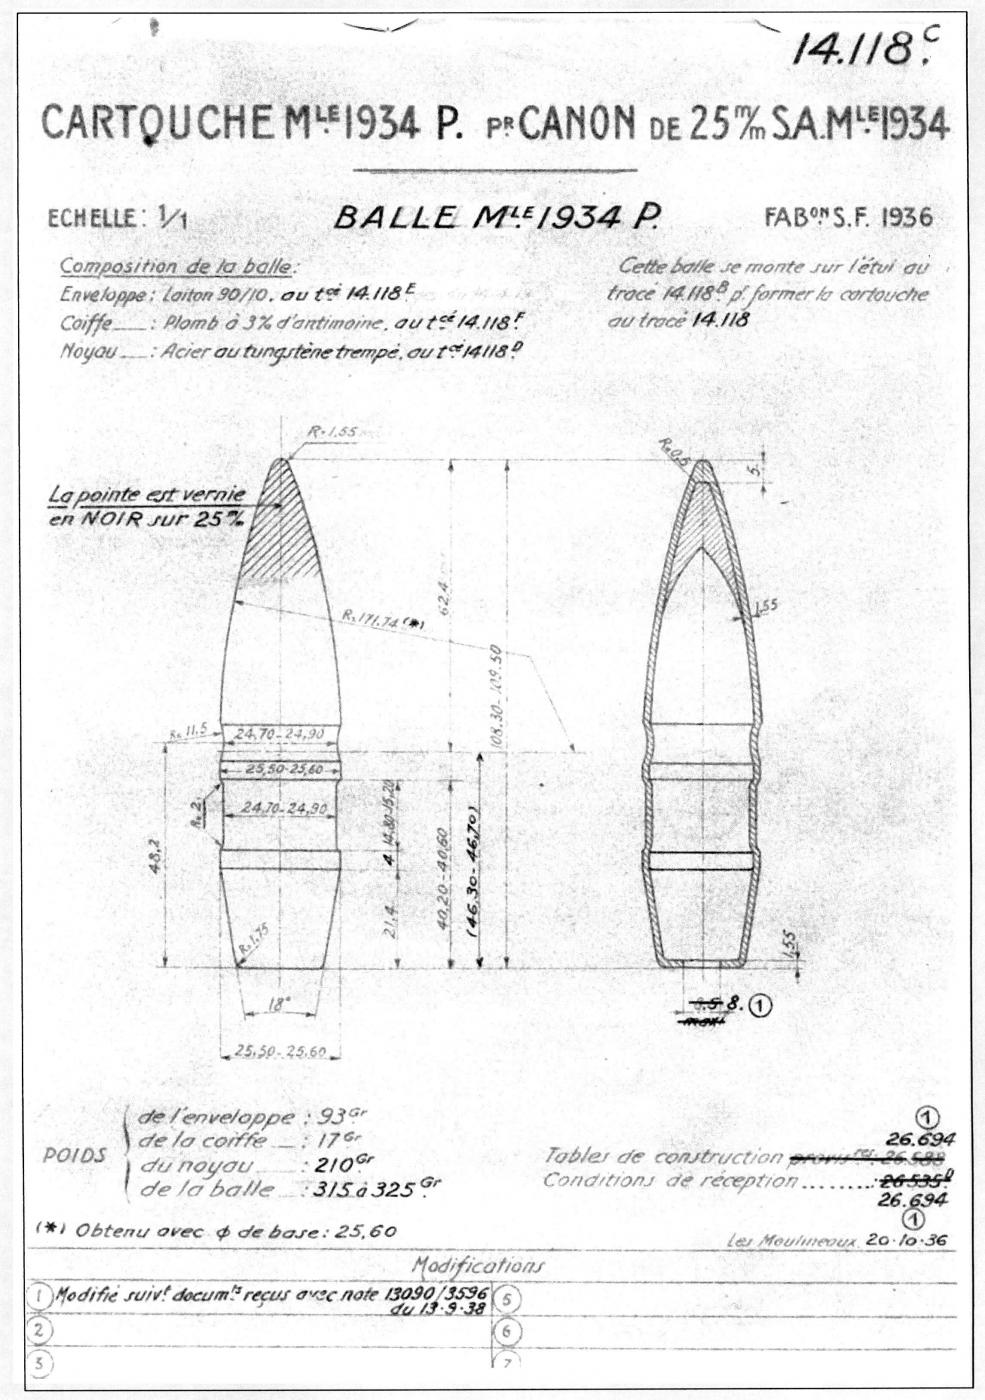 Balle P Mle 1934 – Tracé N° 14118C